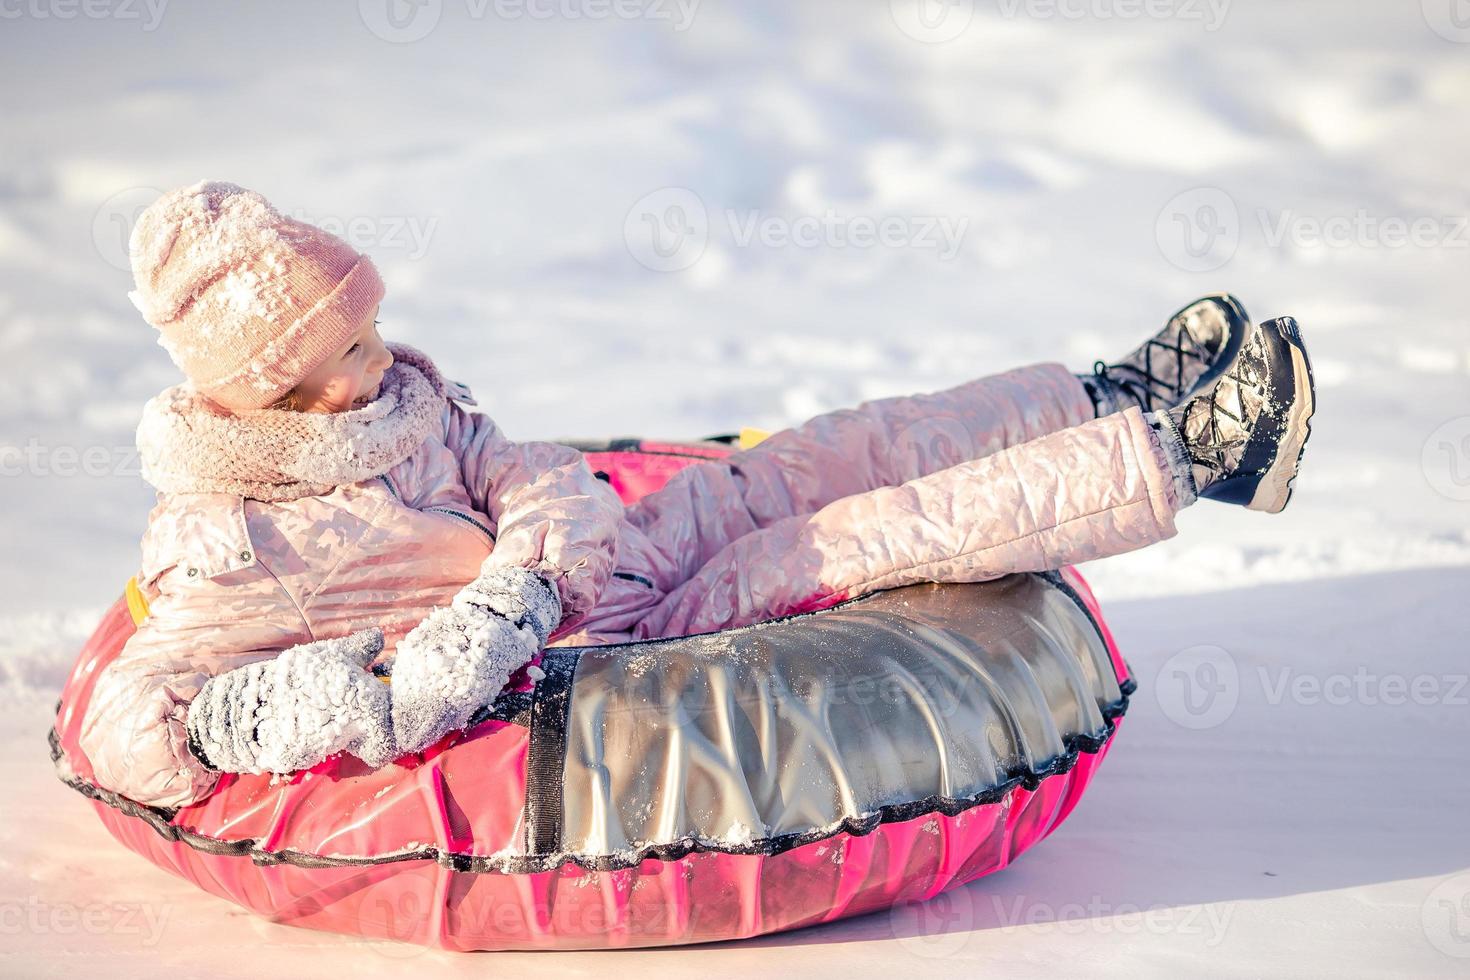 adorable niña feliz en trineo en invierno día de nieve. foto